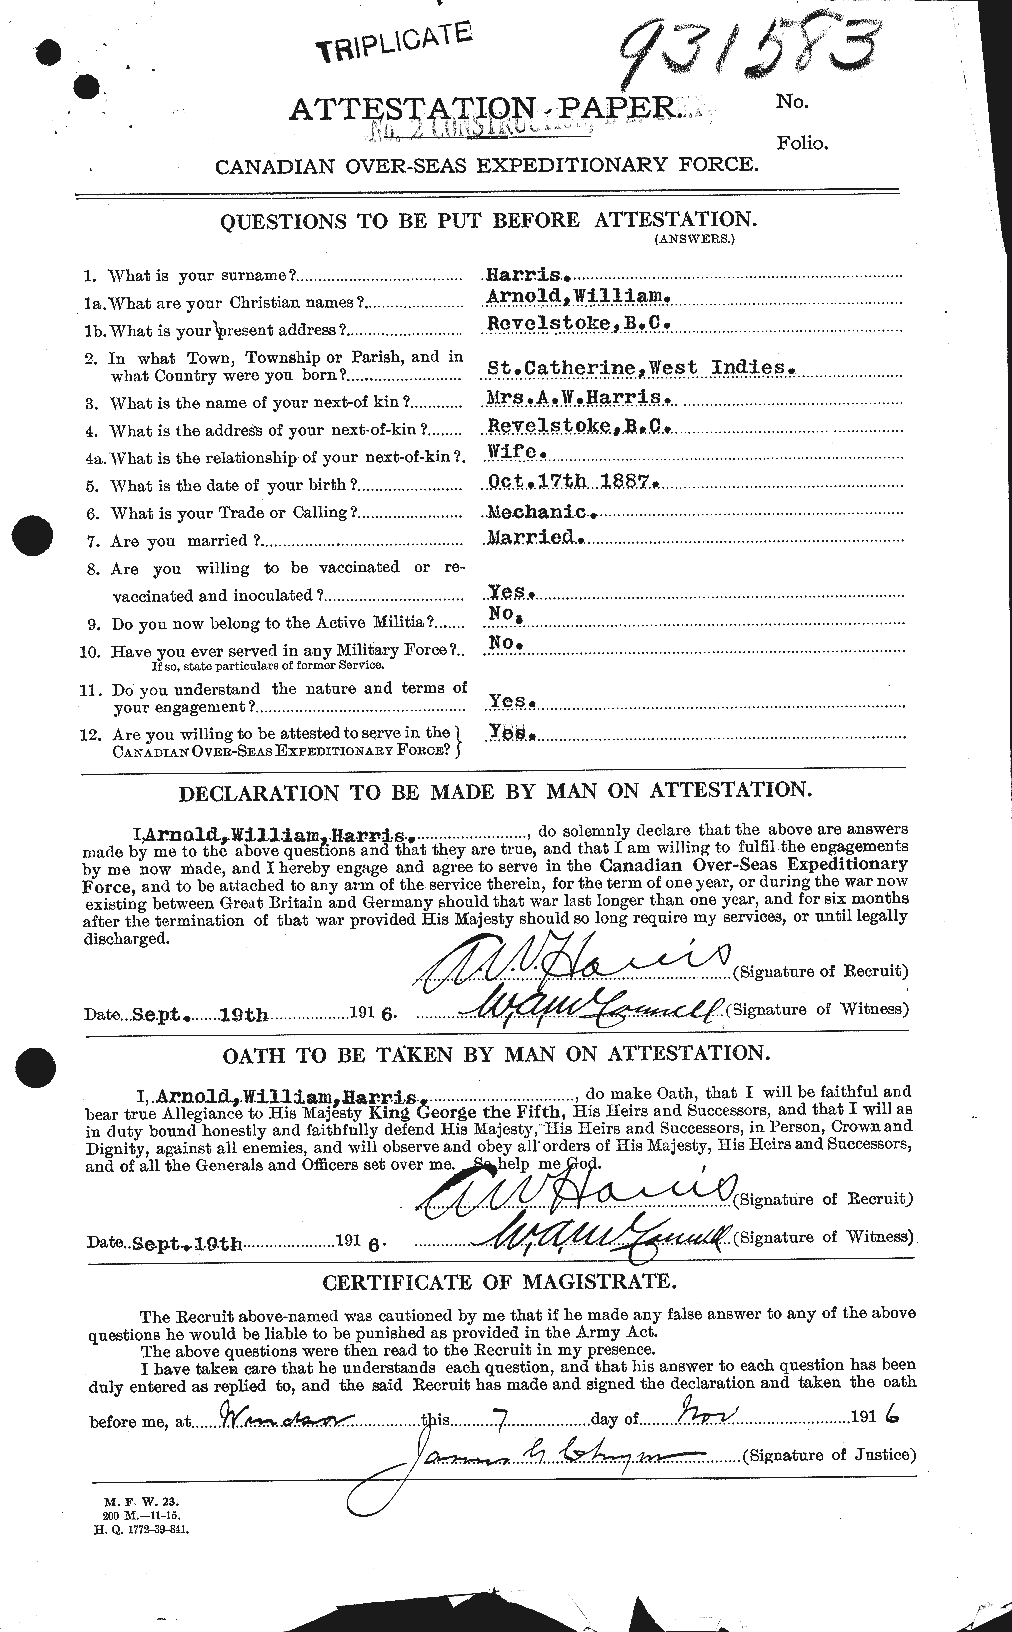 Dossiers du Personnel de la Première Guerre mondiale - CEC 379113a